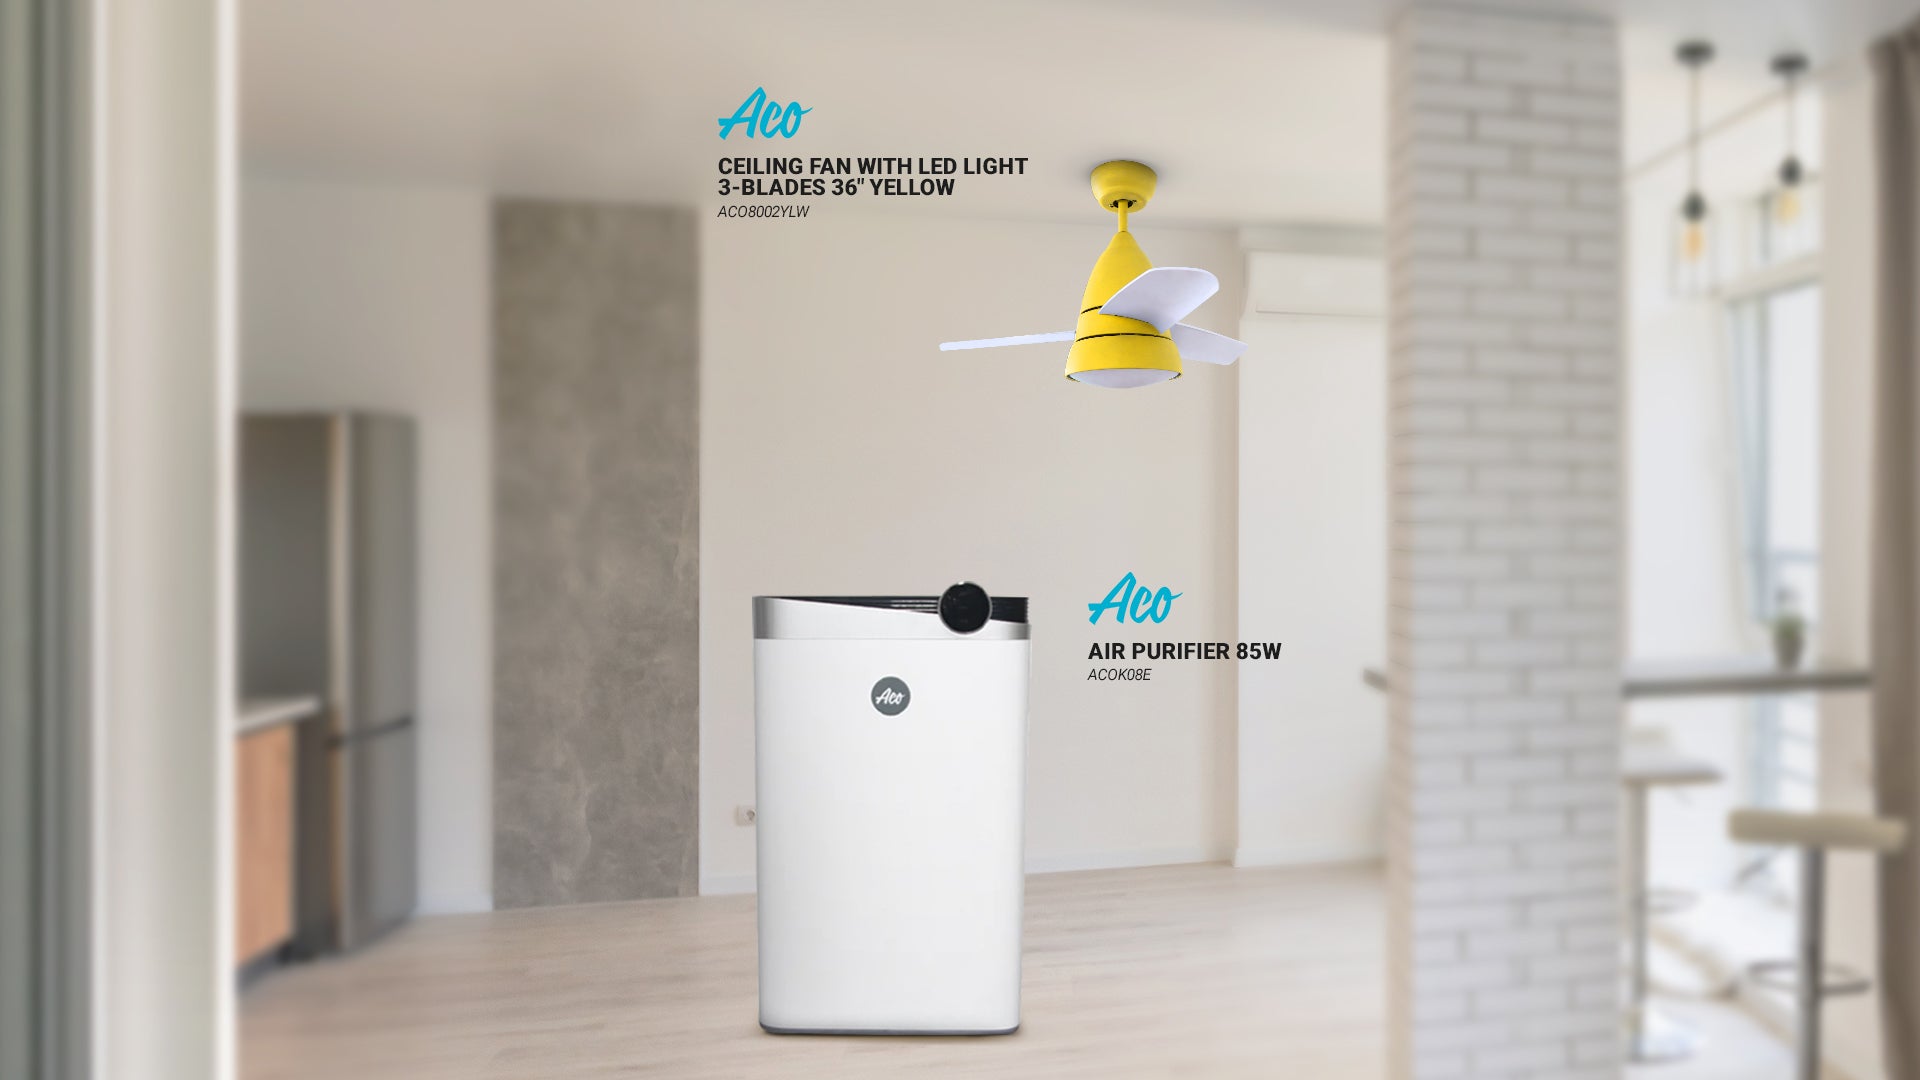 Aco air purifier, Aco ceiling fan